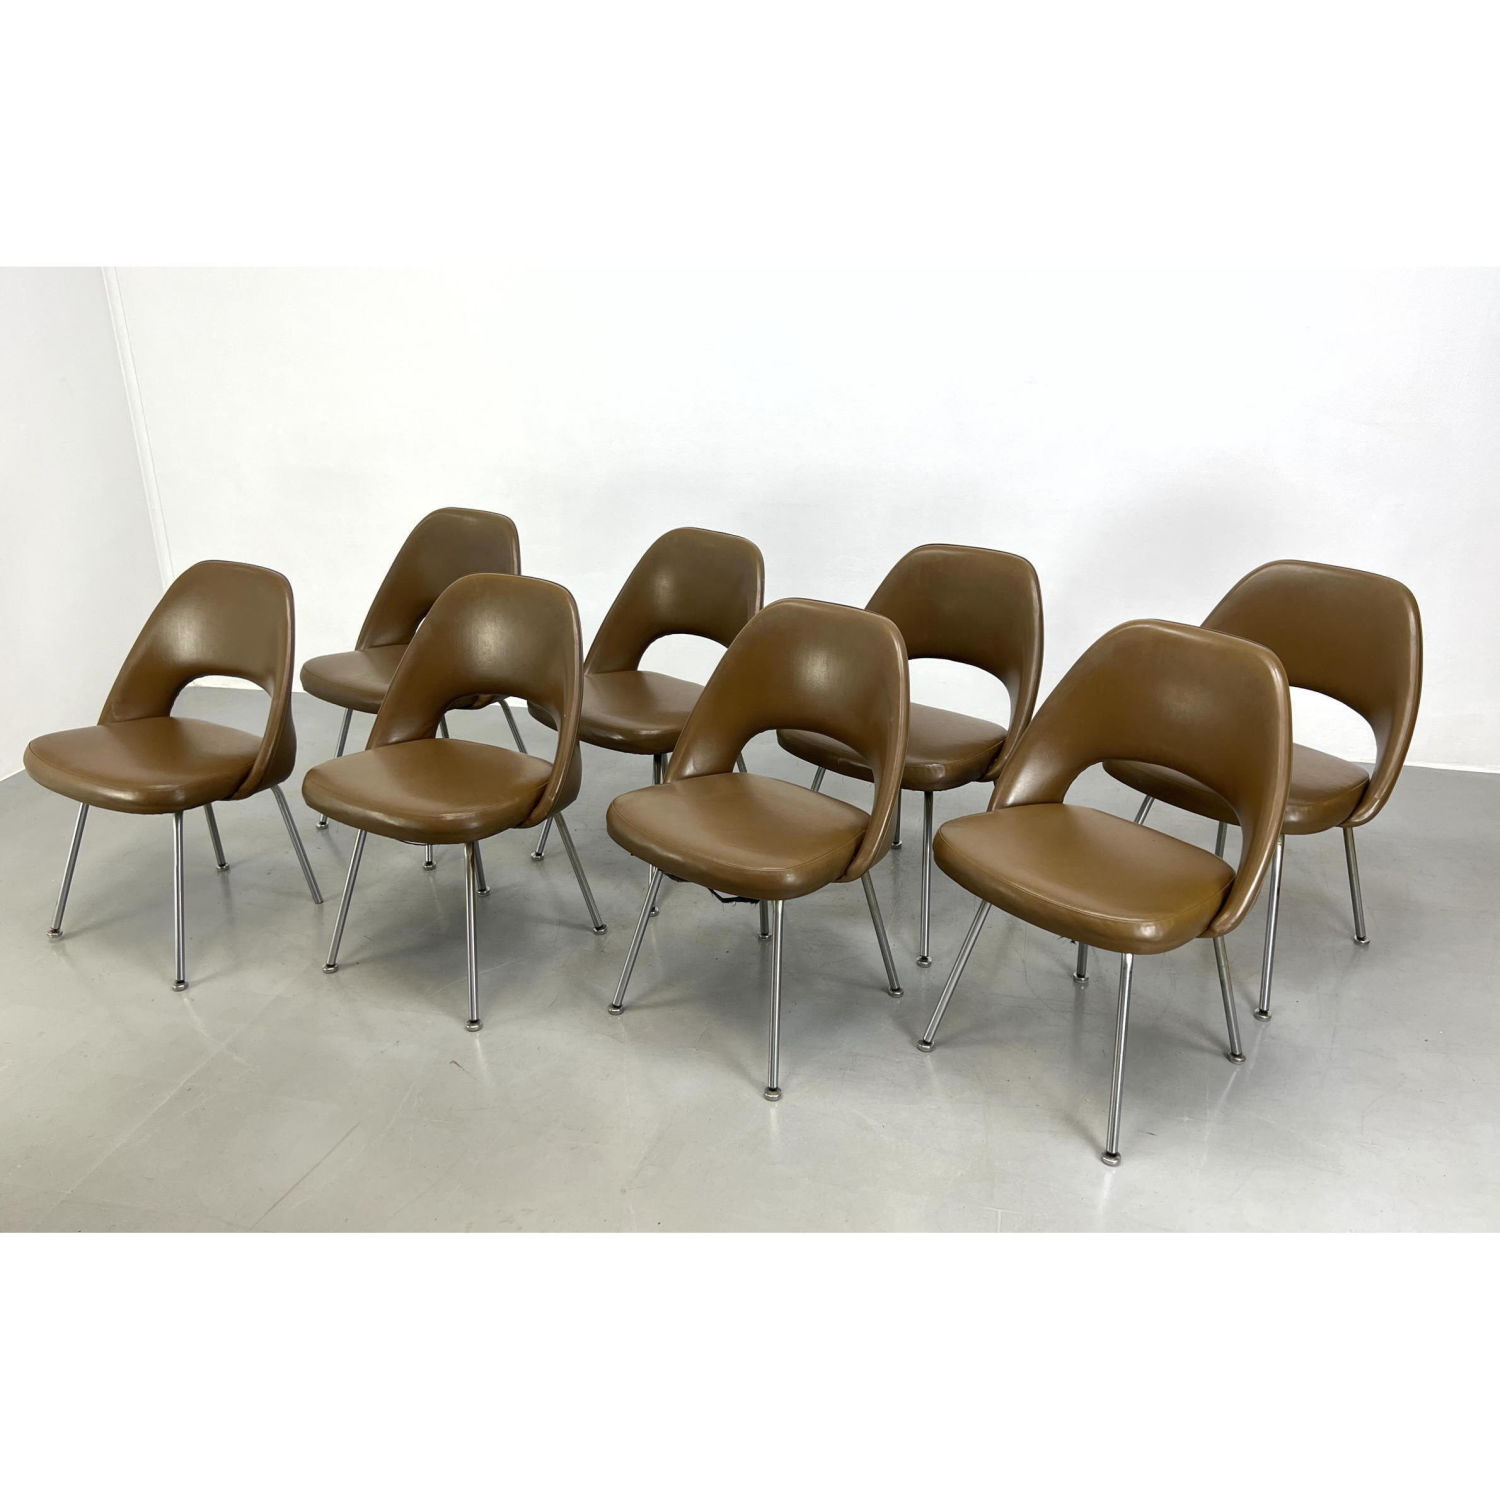 Set 8 Eero Saarinen for Knoll Chairs  2b9c31